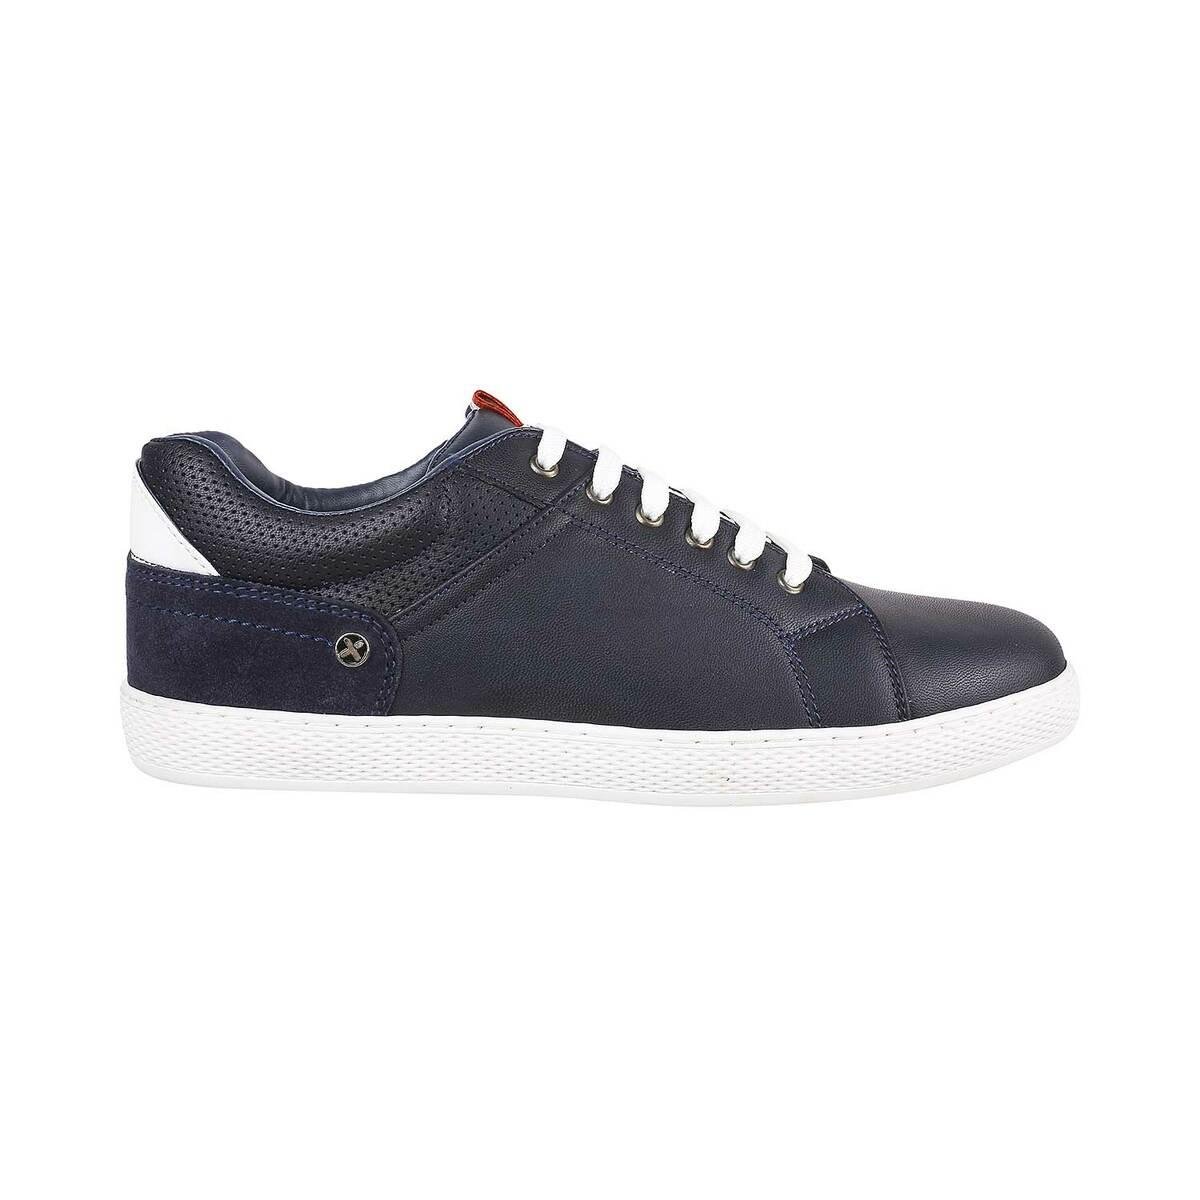 Buy Men Blue Casual Sneakers Online | SKU: 71-8425-45-40-Metro Shoes